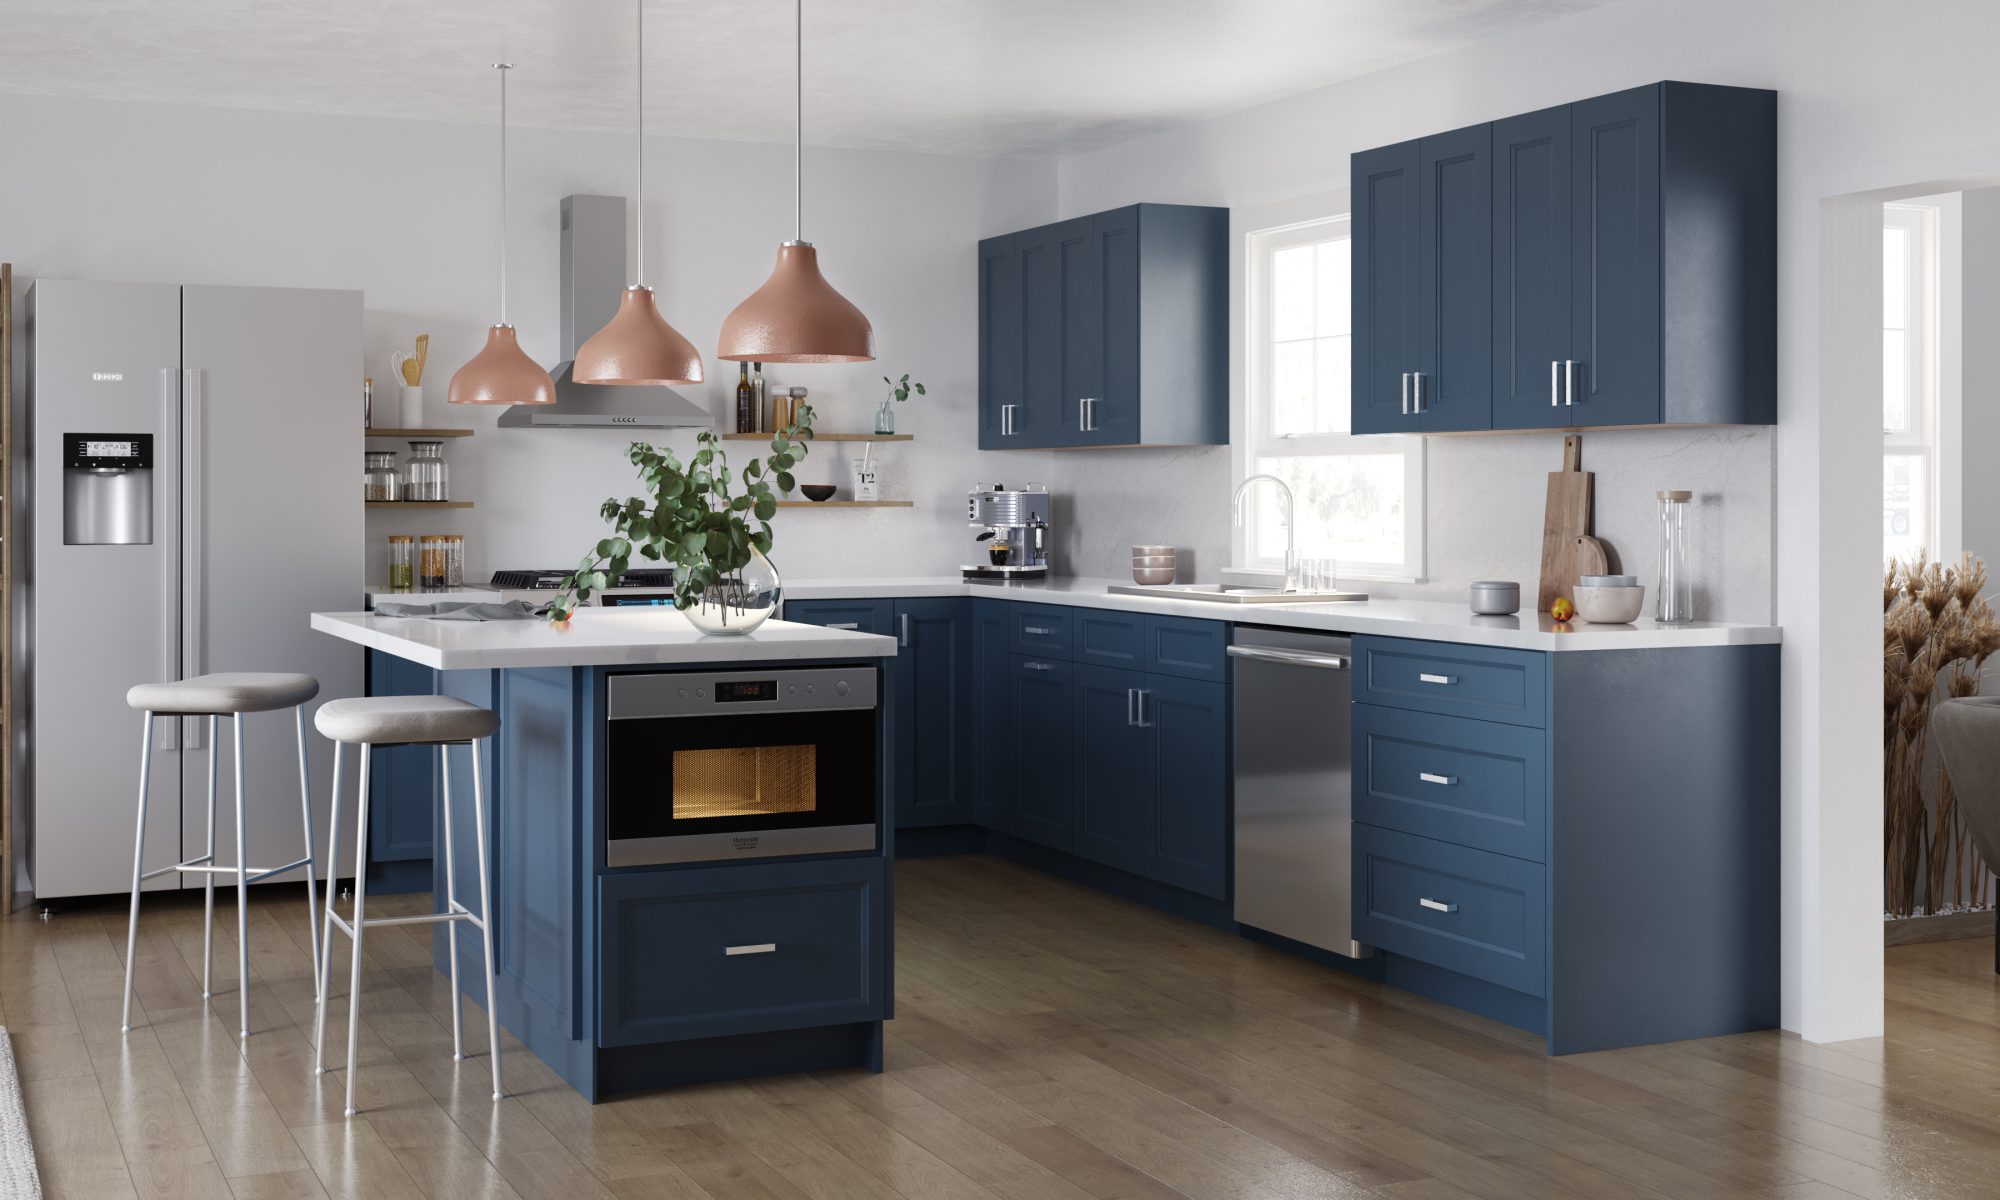 Todays Designer Kitchens Small-midnight-blue-kitchen-1-2000x1200 Midnight Blue 